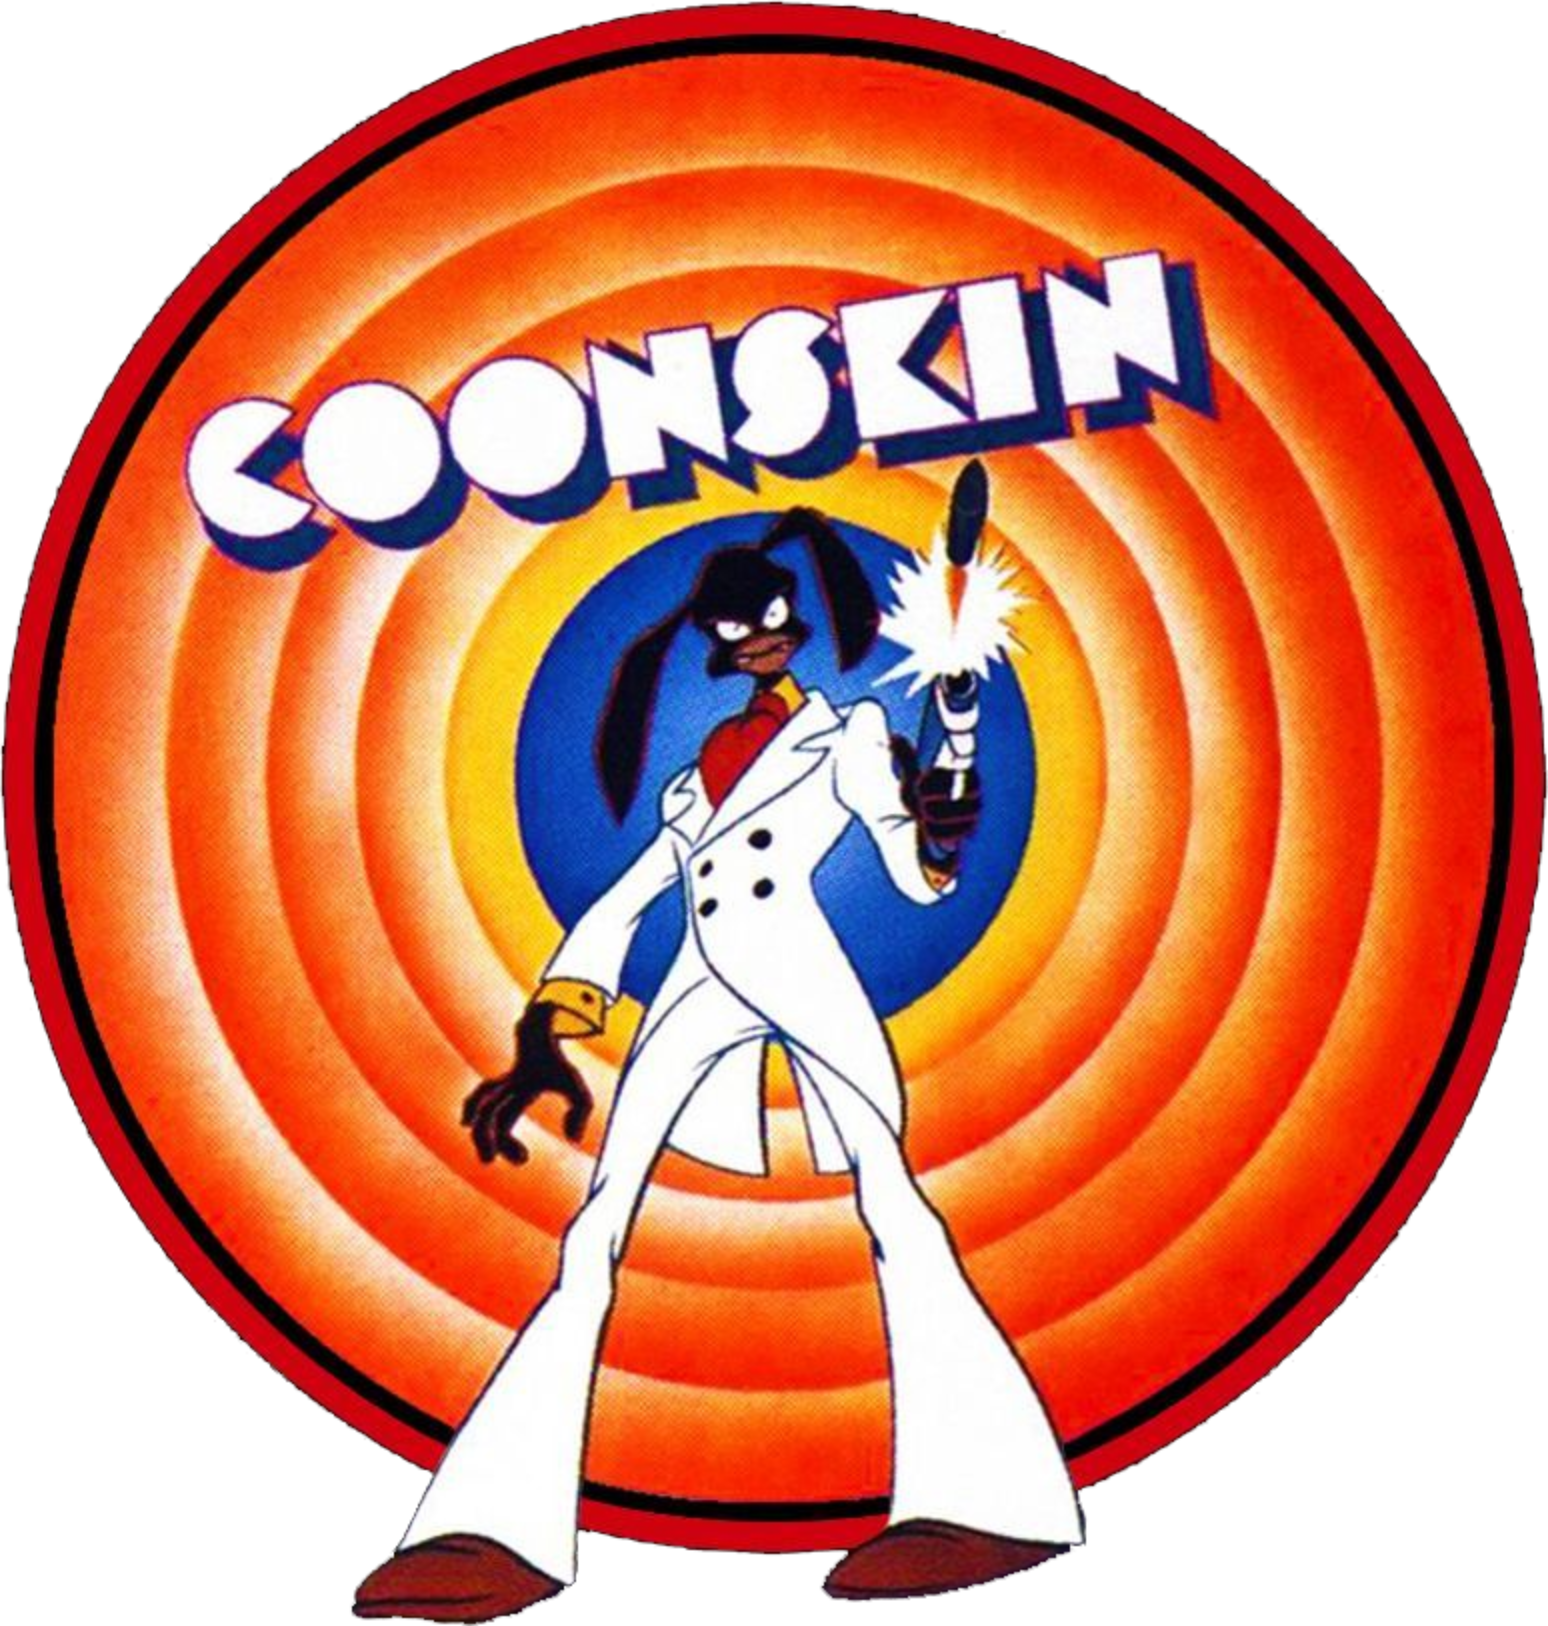 Coonskin (1 DVD Box Set)